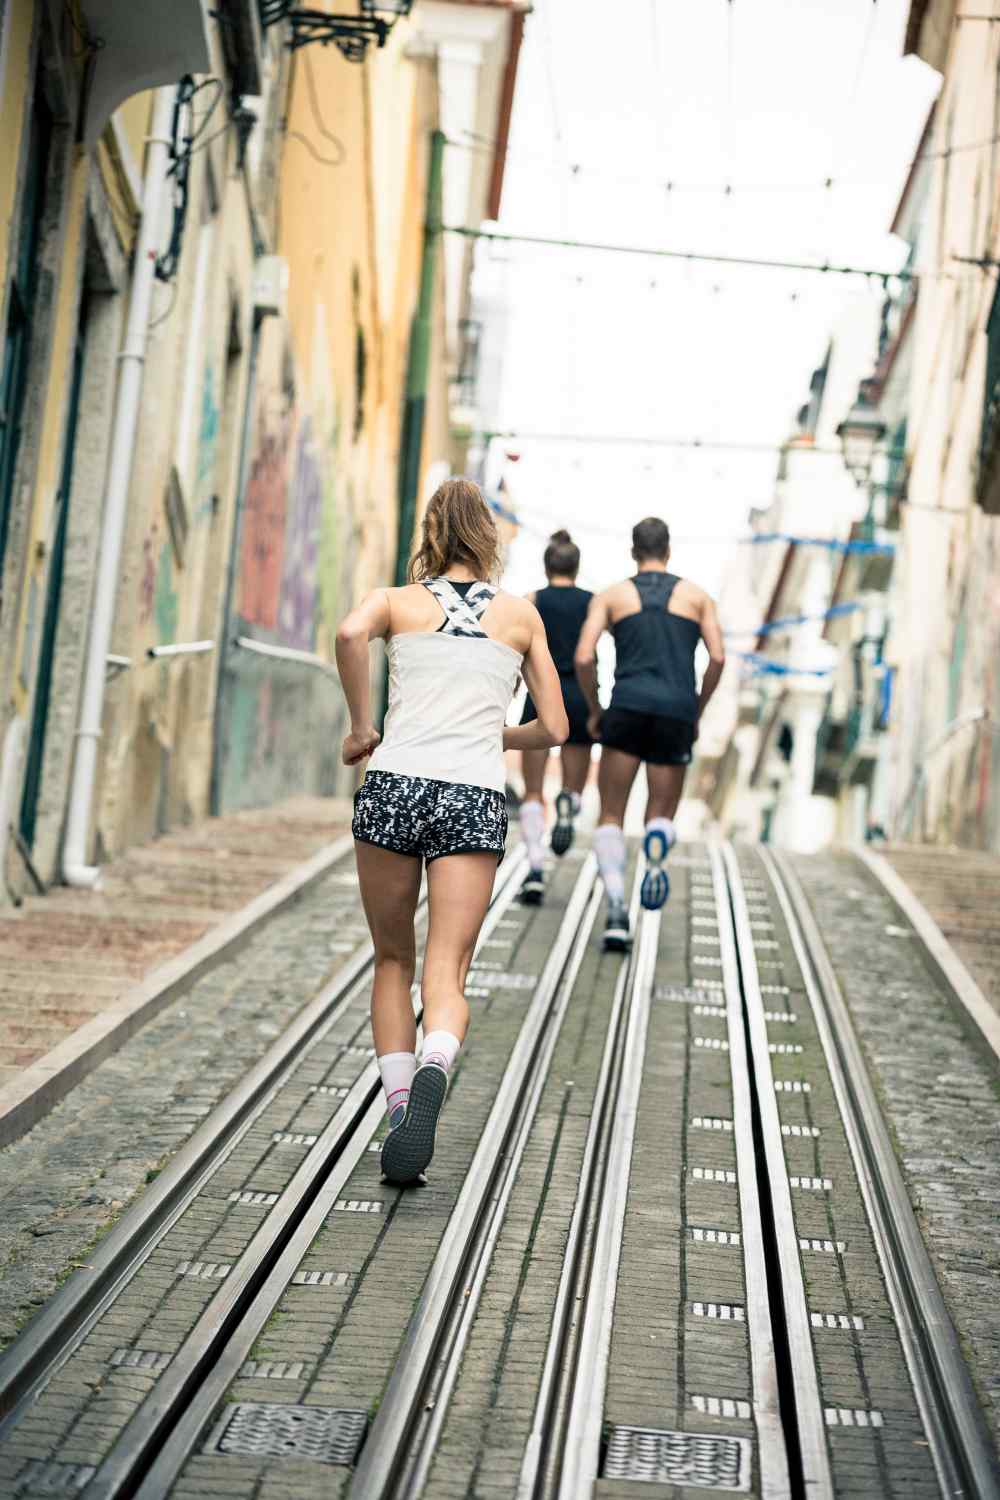 Twee lopers en een hardloper lopen een tramlijn in een stad